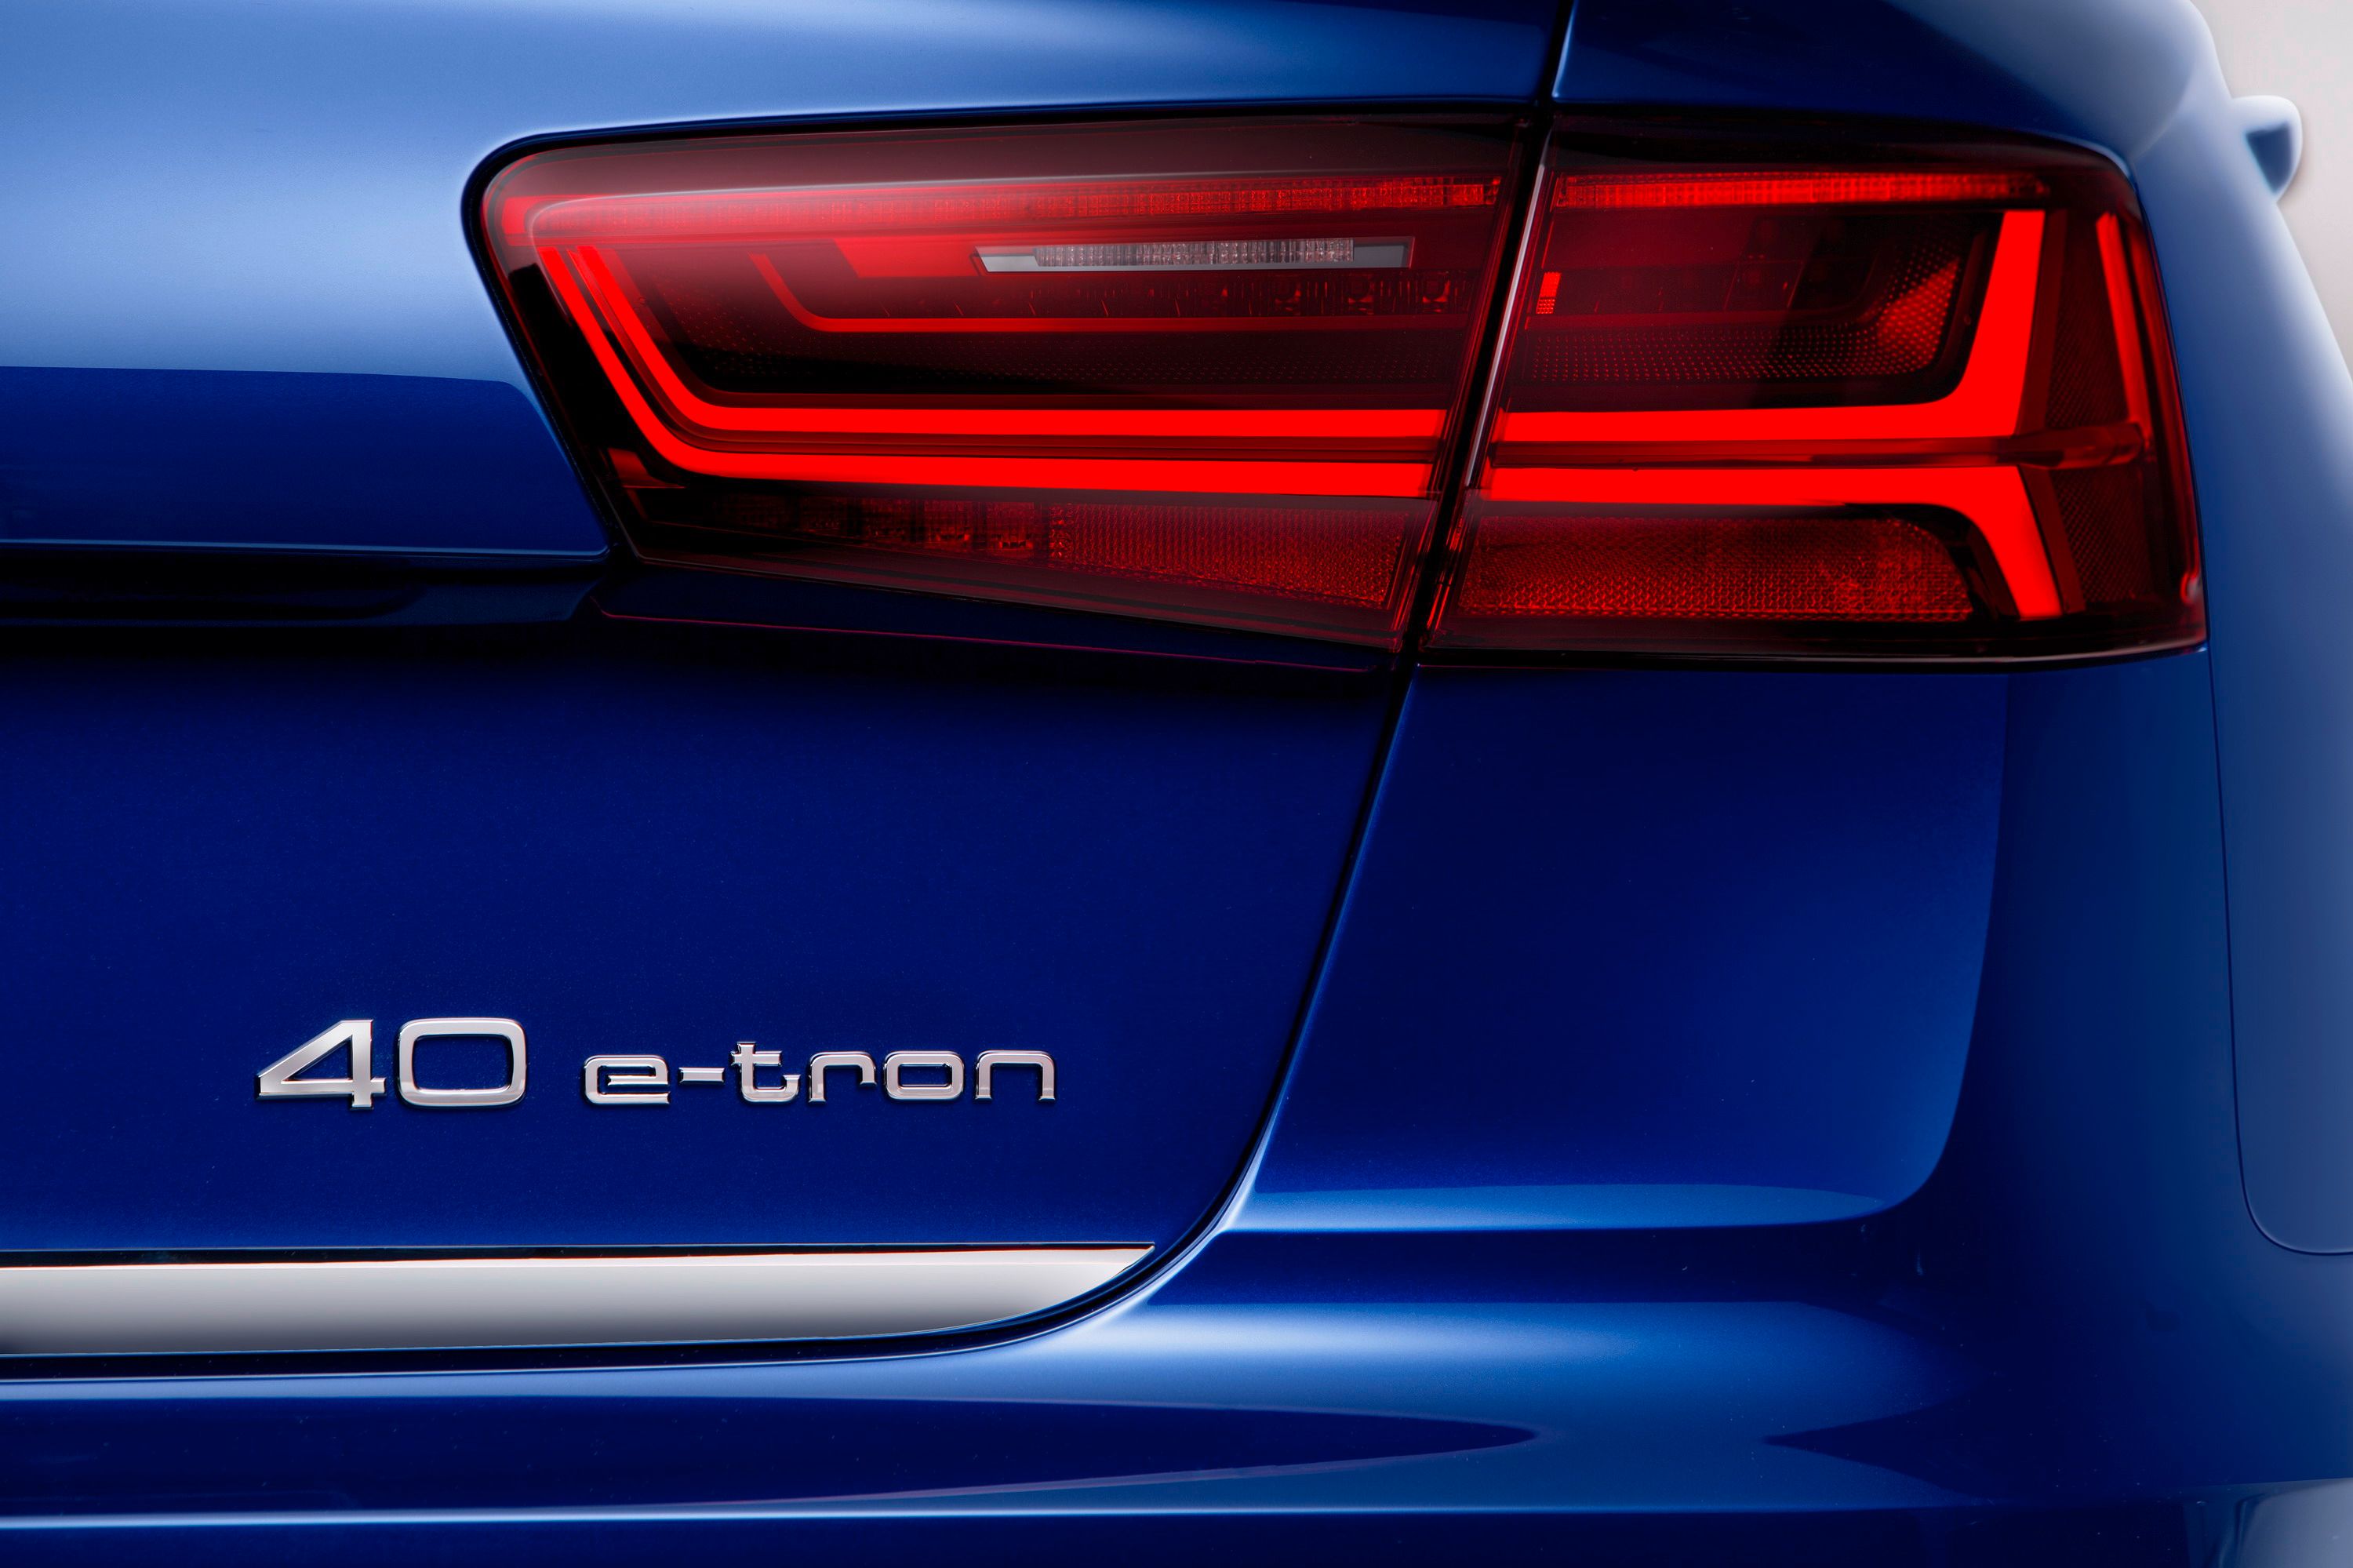 2015 Audi A6 L e-tron